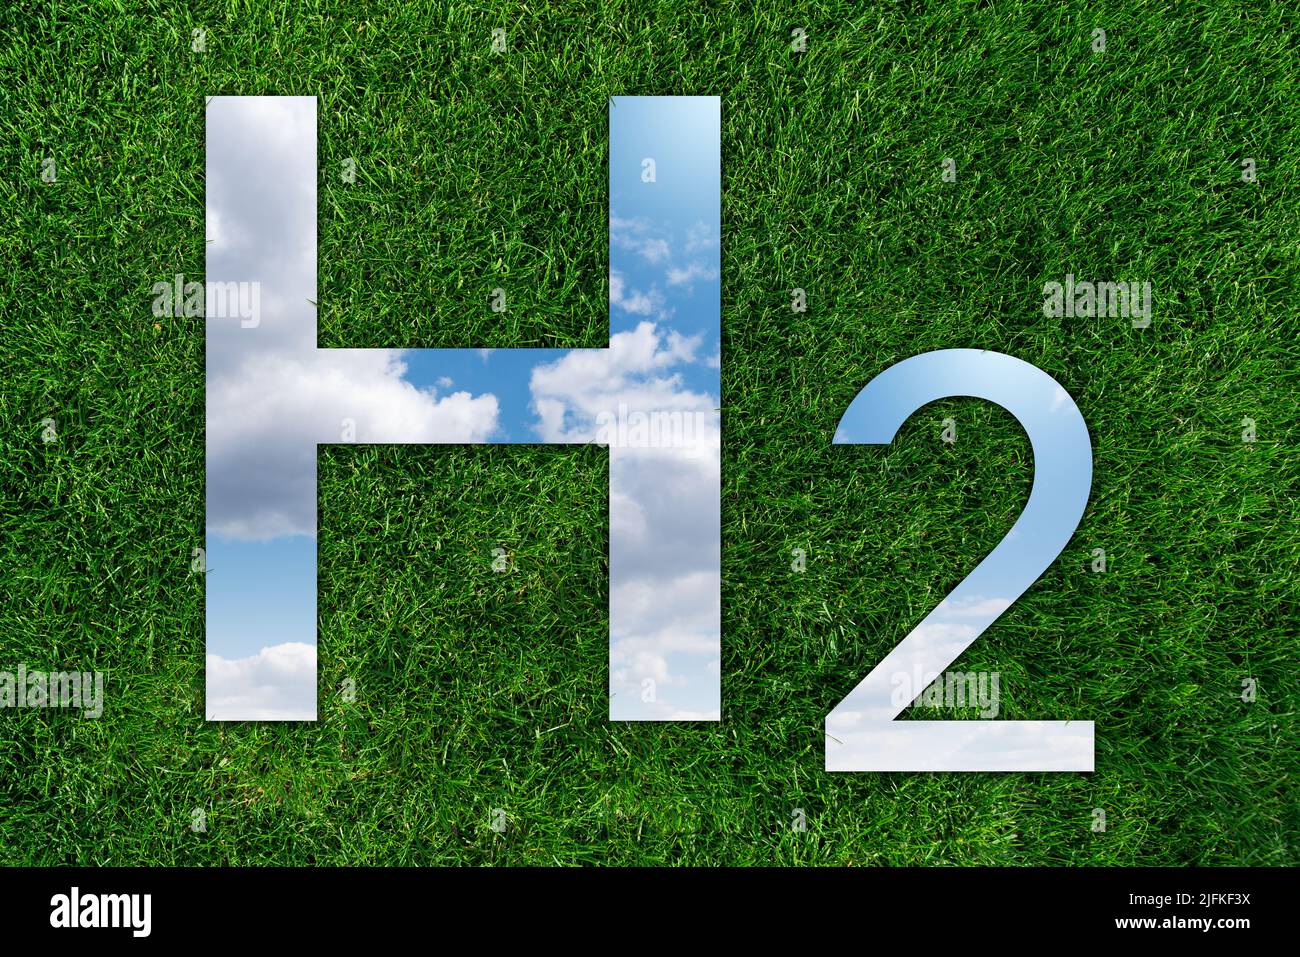 Miroir sous forme d'hydrogène formule H2 sur herbe verte. Réflexion du ciel. Concept d'obtention d'hydrogène vert à partir de sources d'énergie renouvelables Banque D'Images